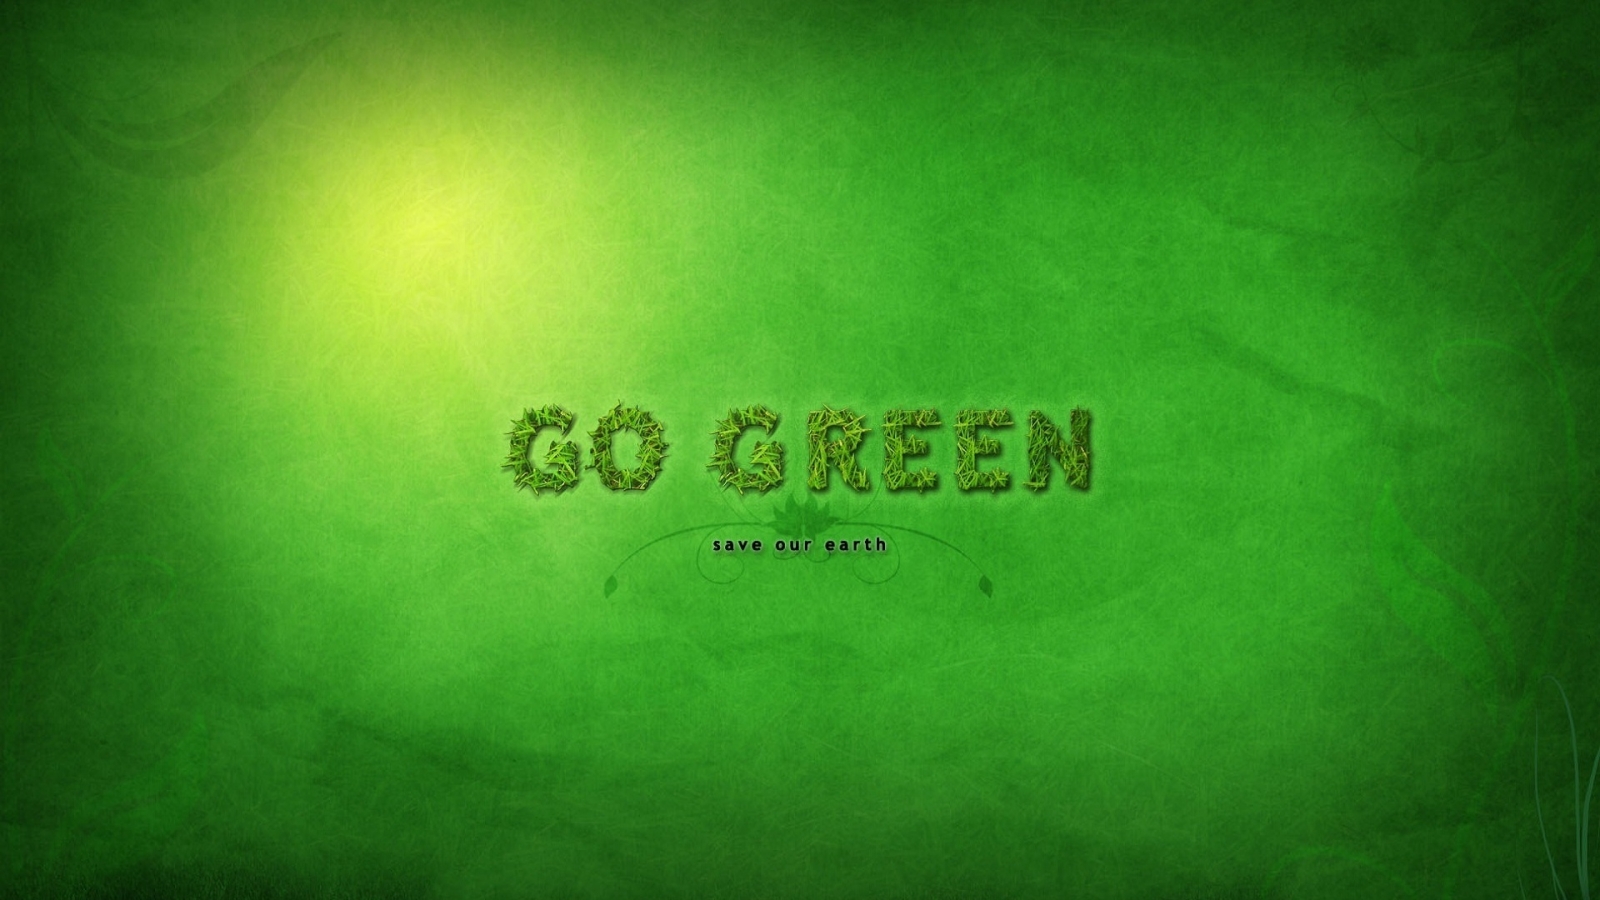 Go Green for 1600 x 900 HDTV resolution